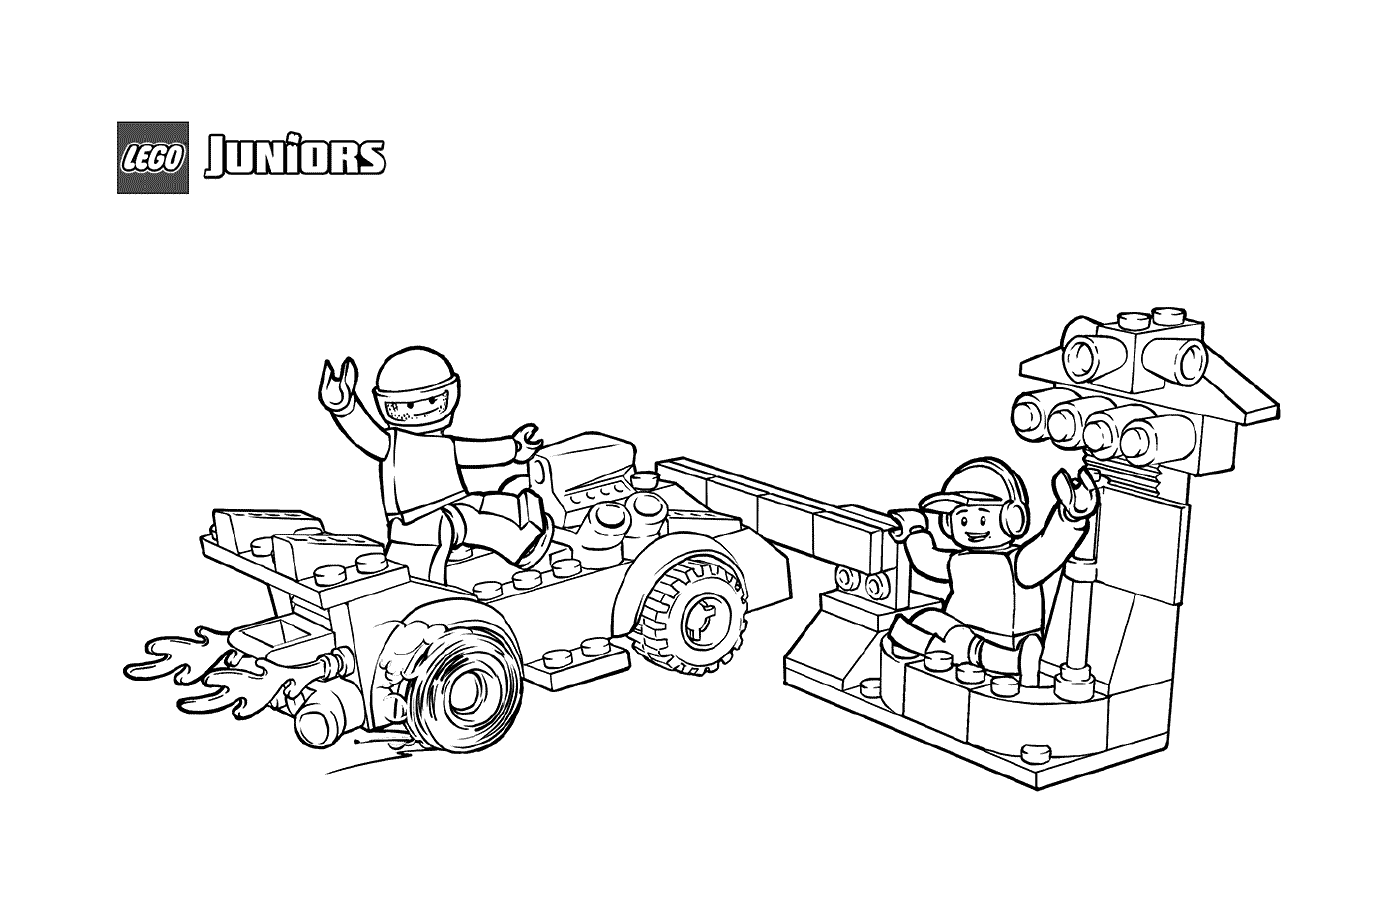  Parada no stand LEGO para carros de corrida 